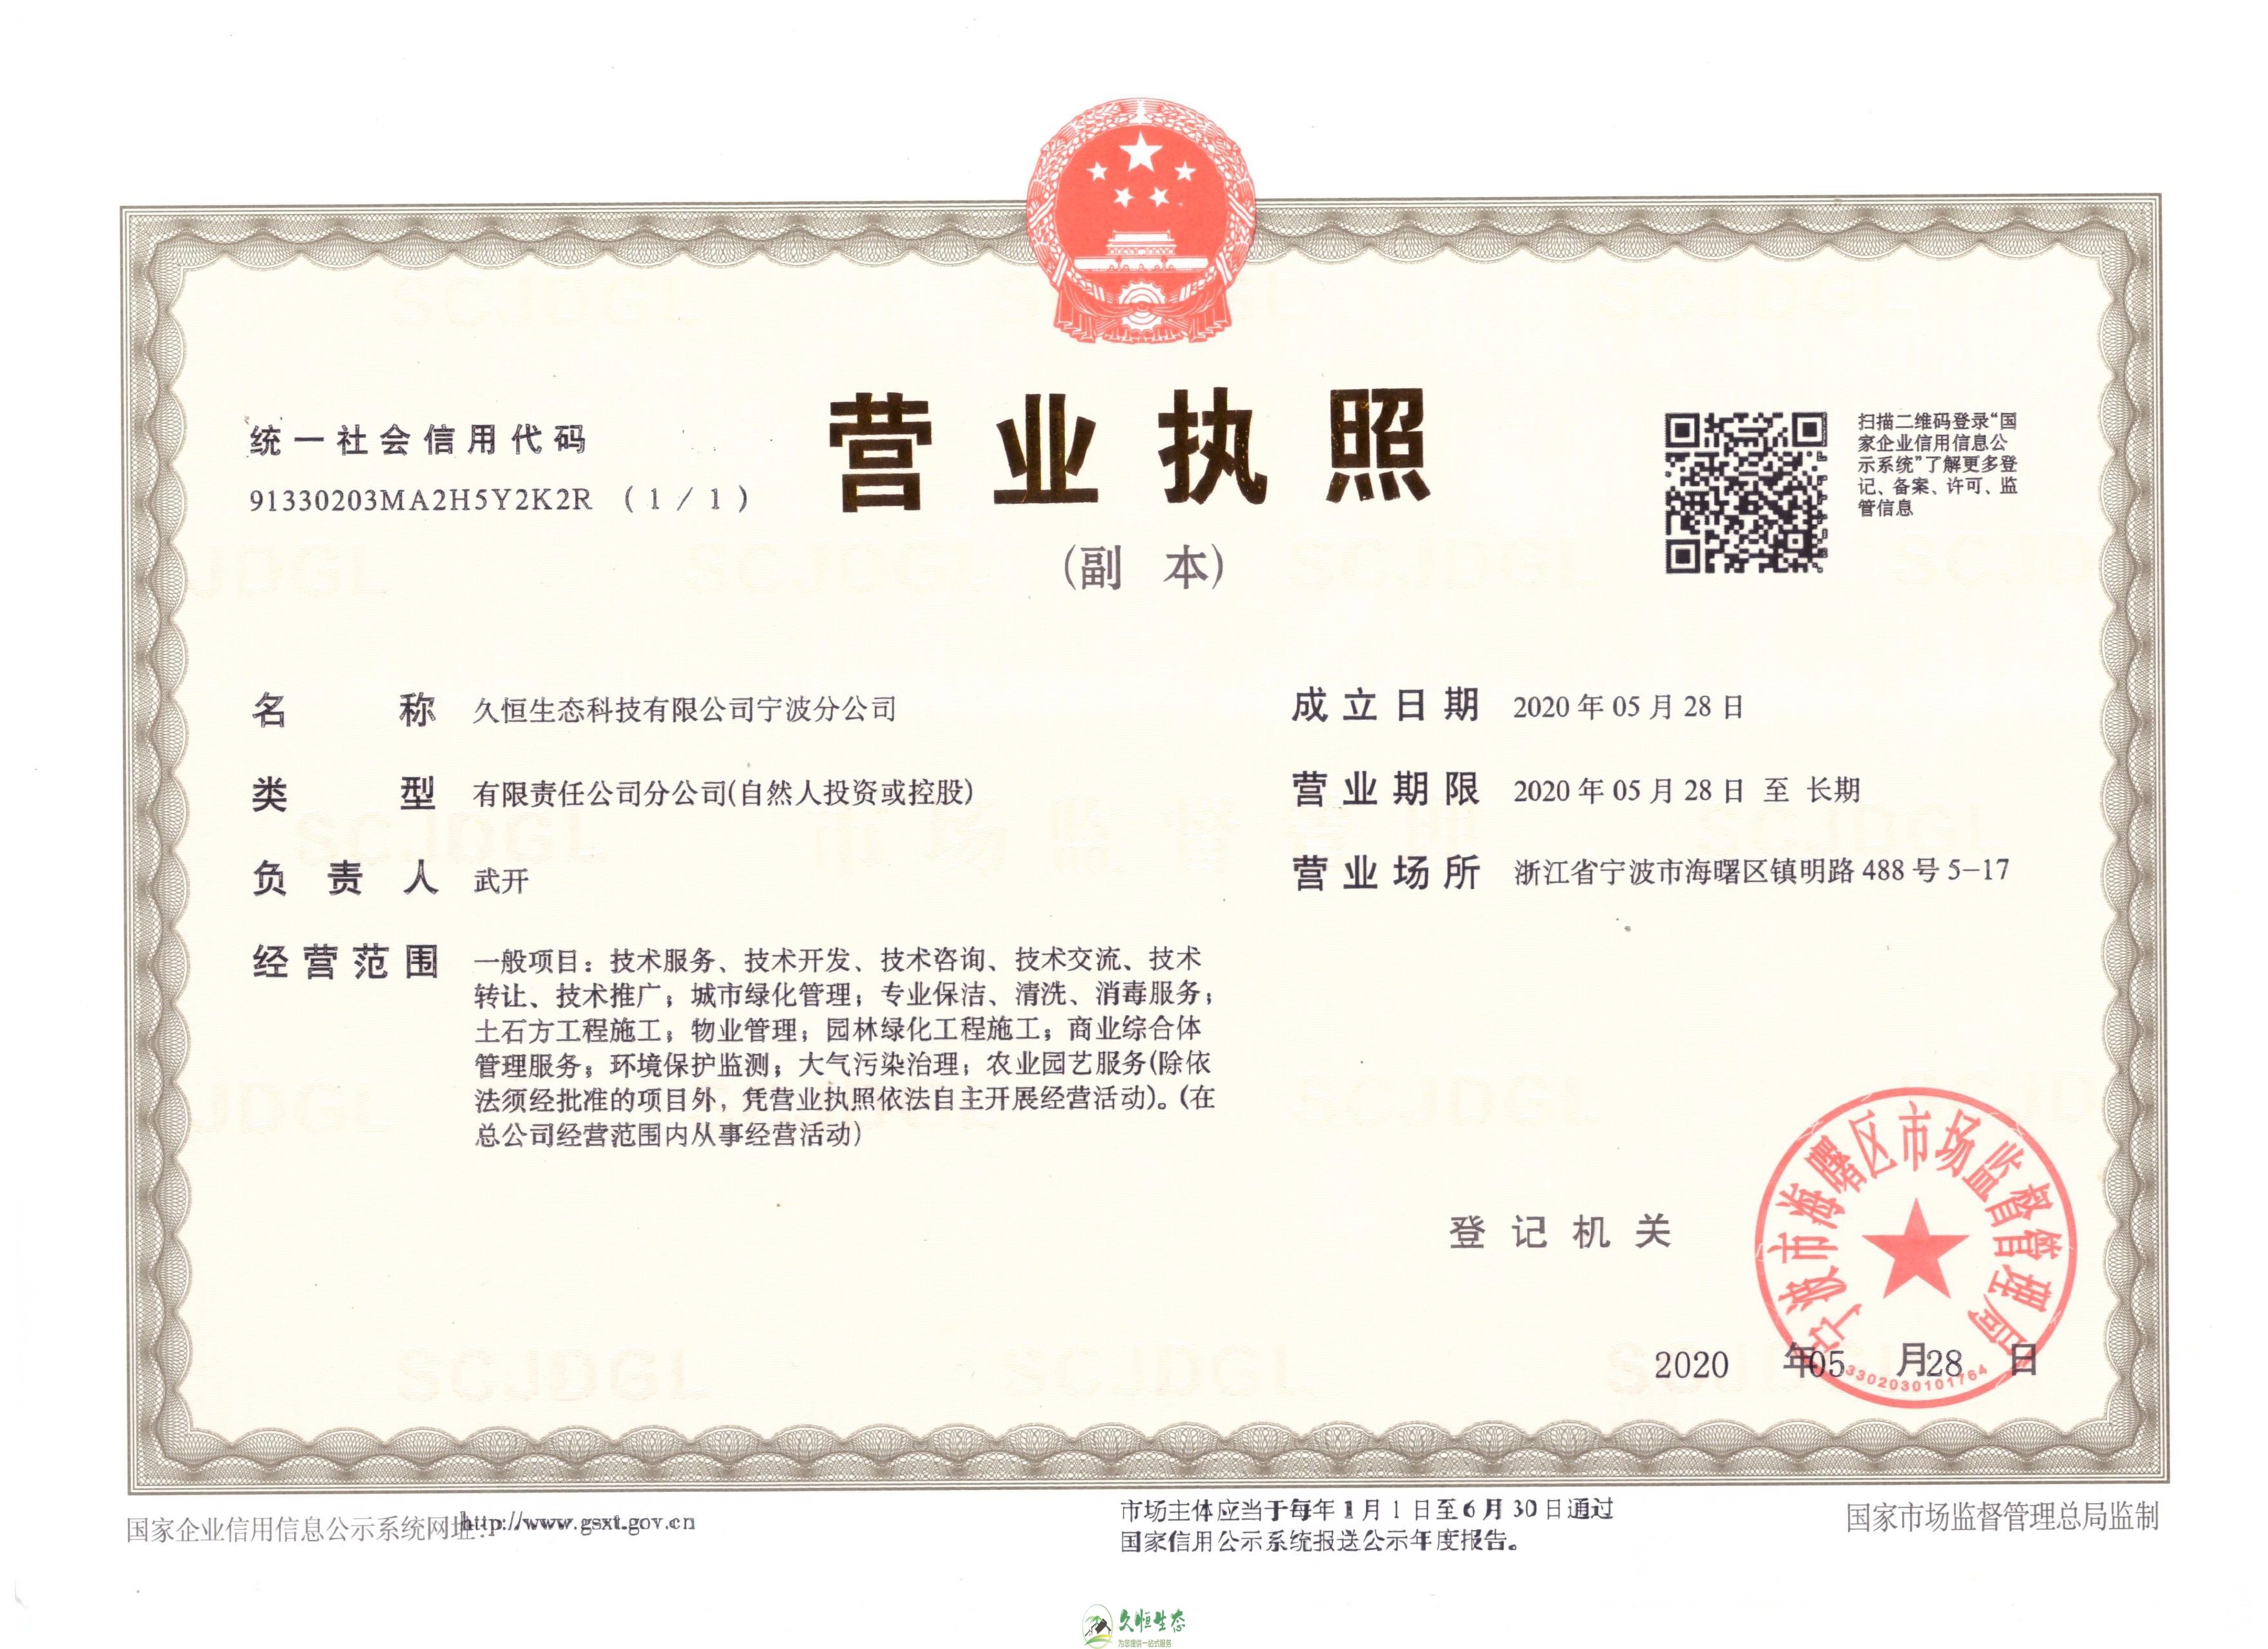 杭州淳安久恒生态宁波分公司2020年5月28日成立